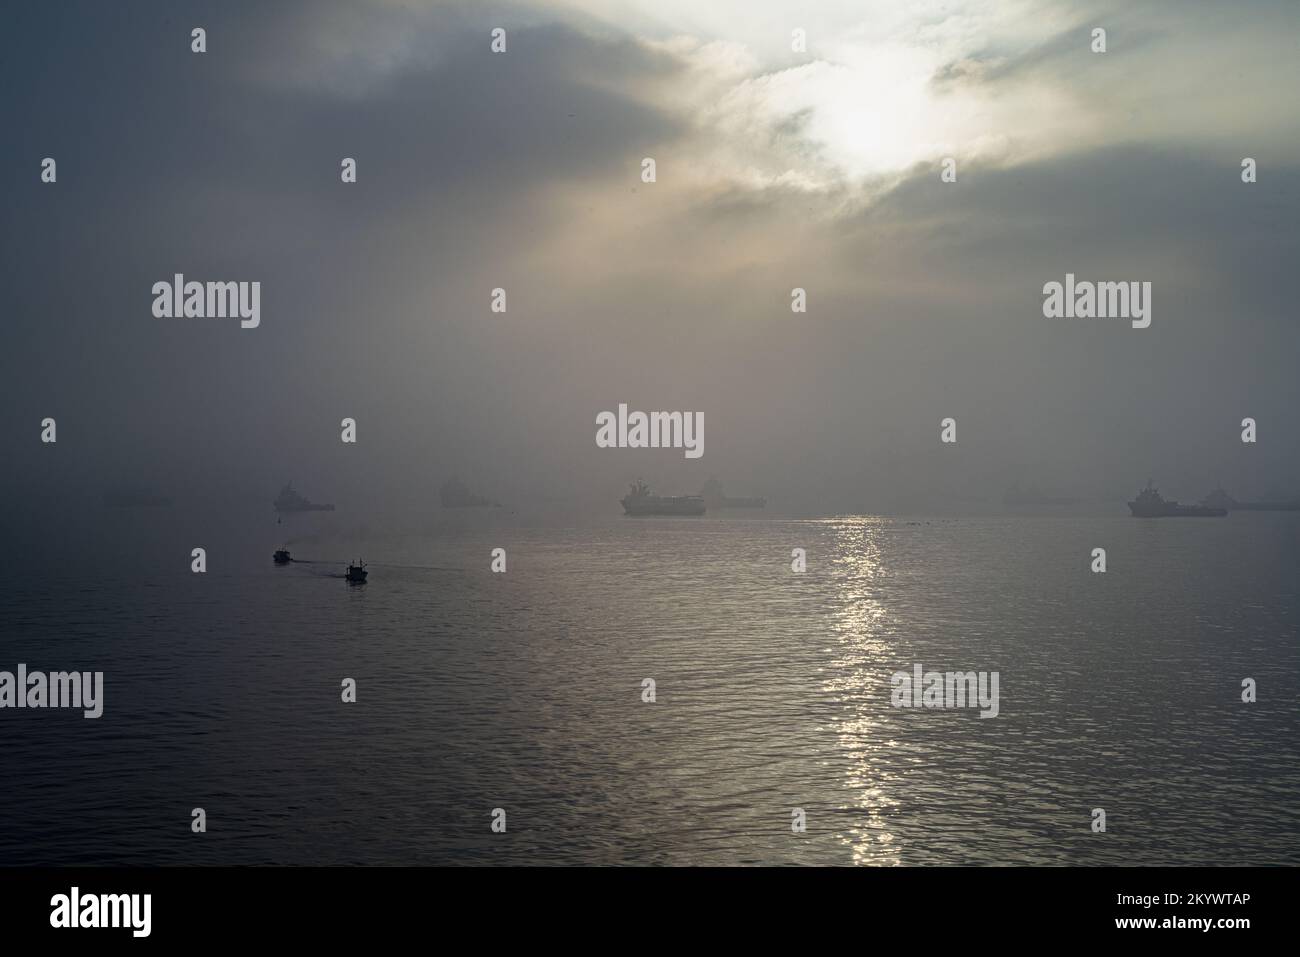 A foggy morning at Guanabara Bay, Rio de Janeiro, Brazil Stock Photo